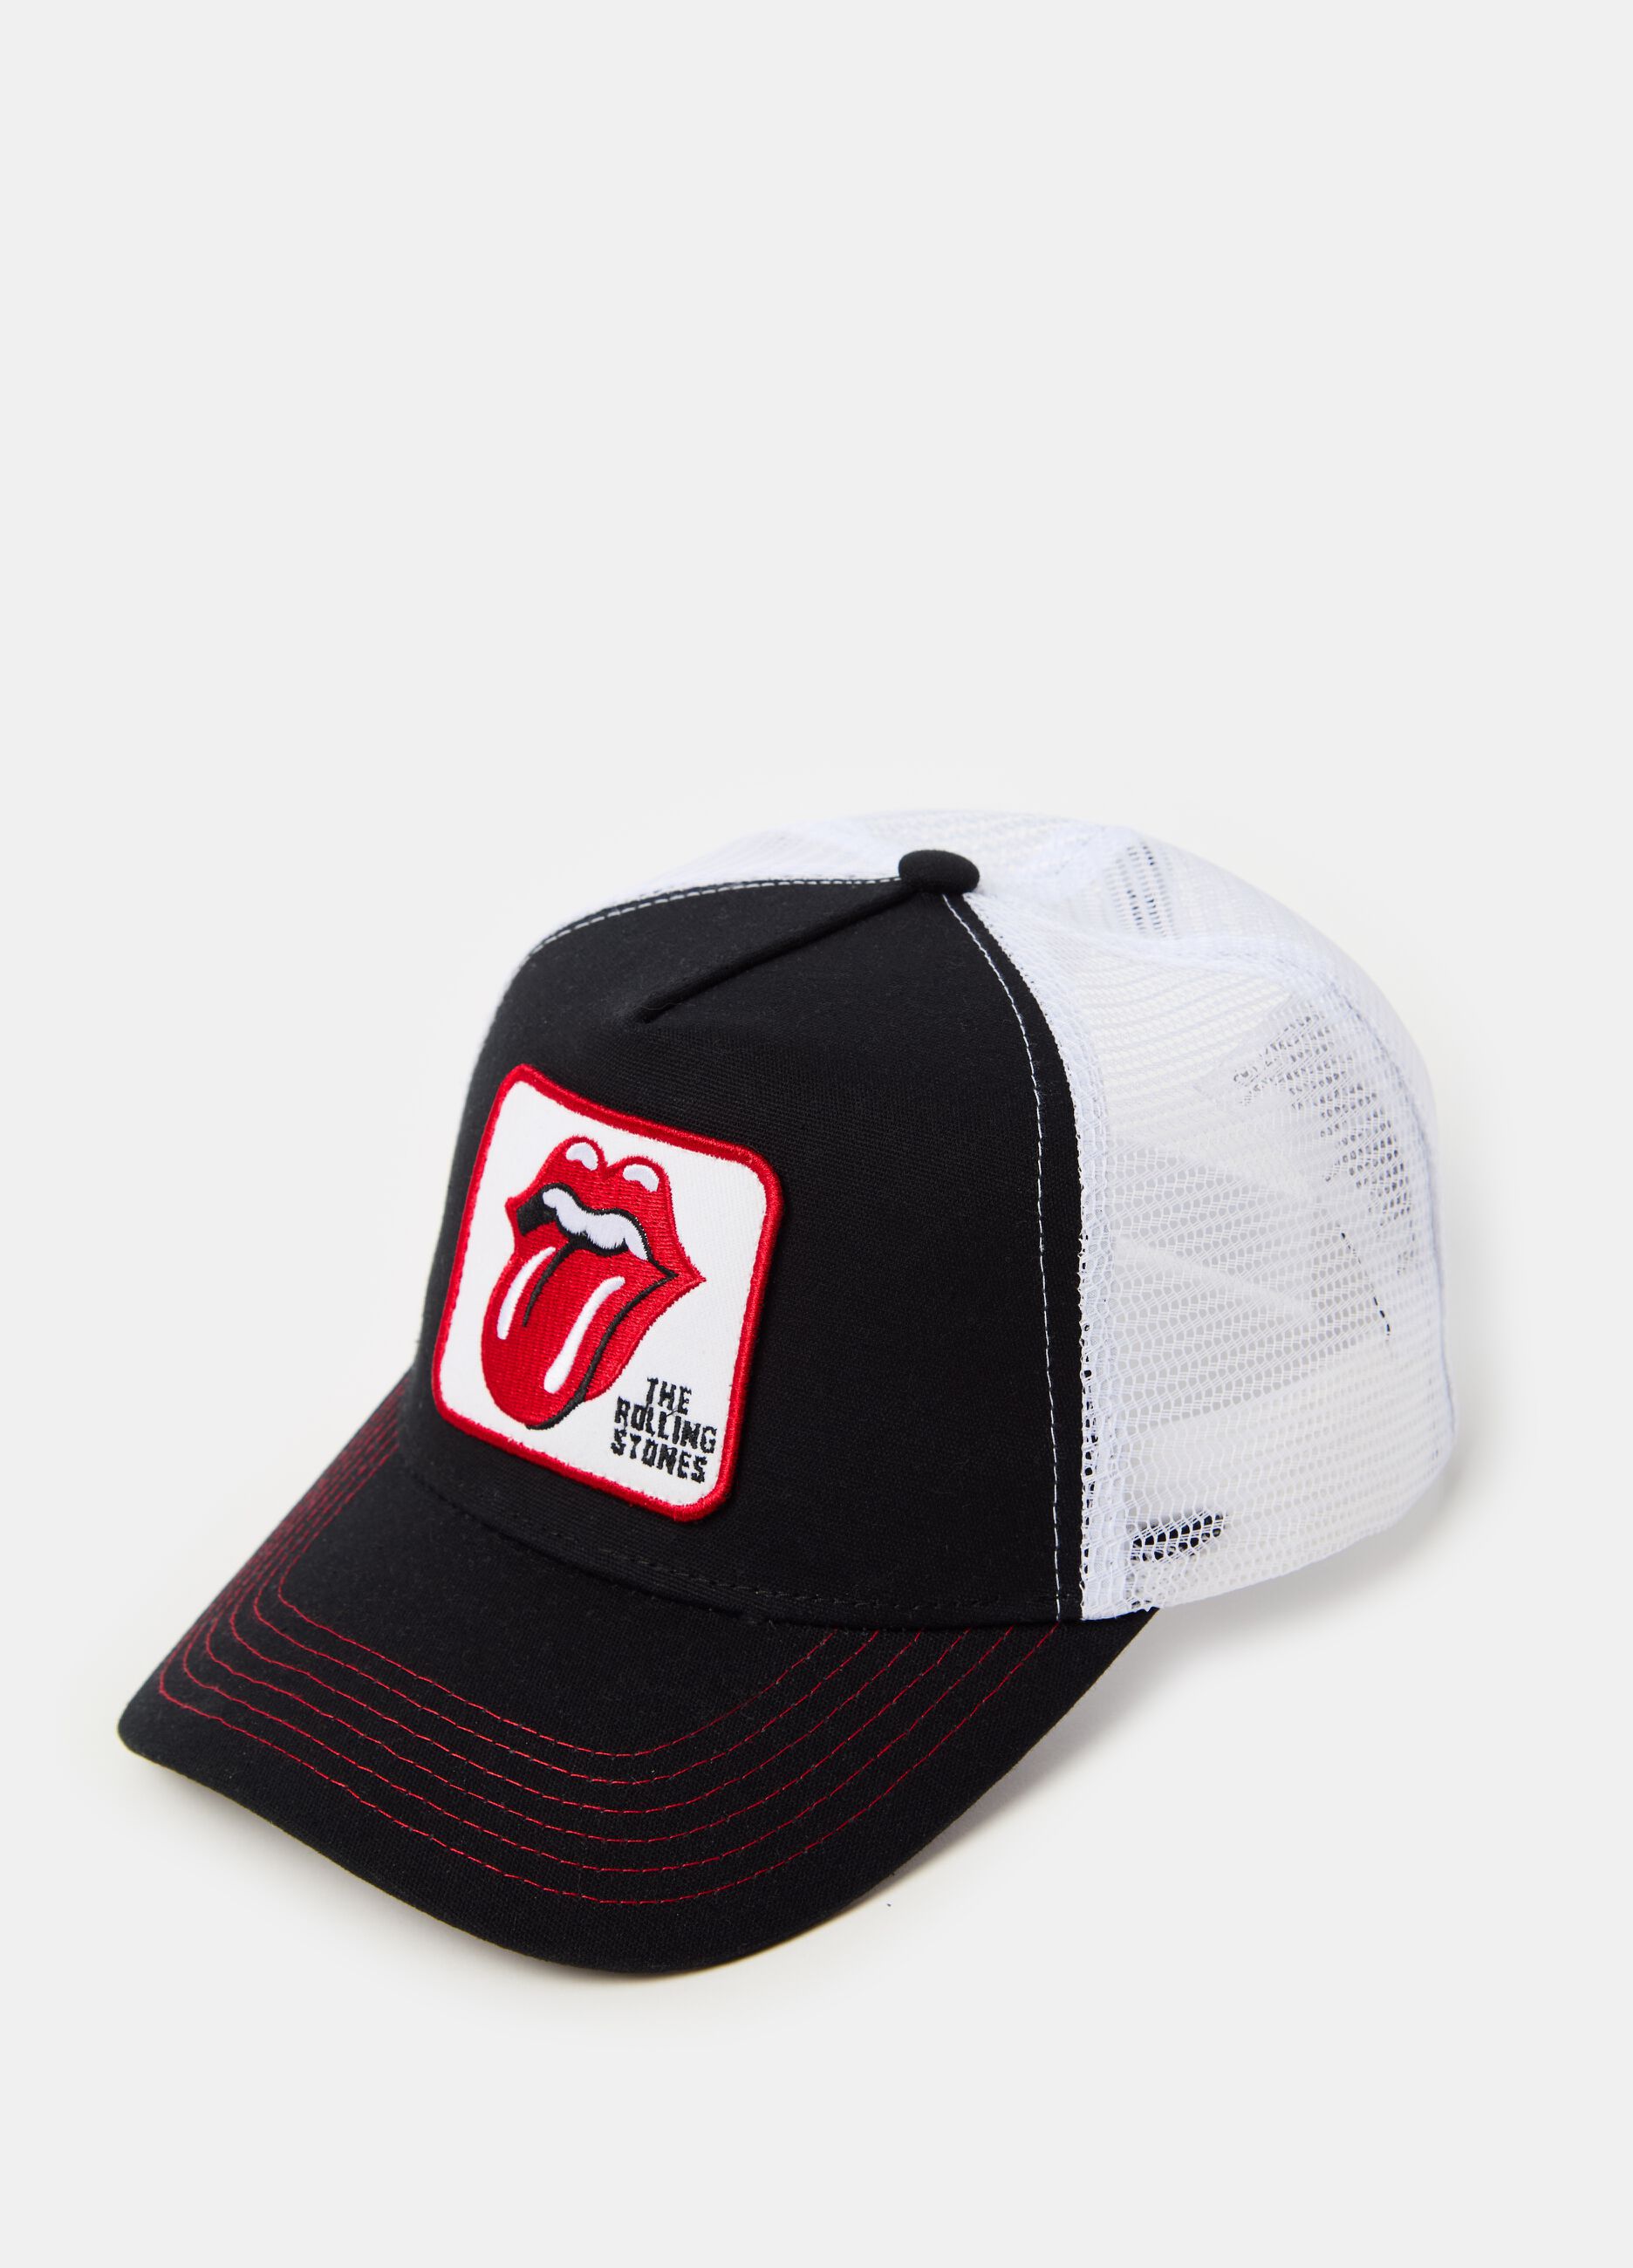 Rolling Stones baseball cap in mesh